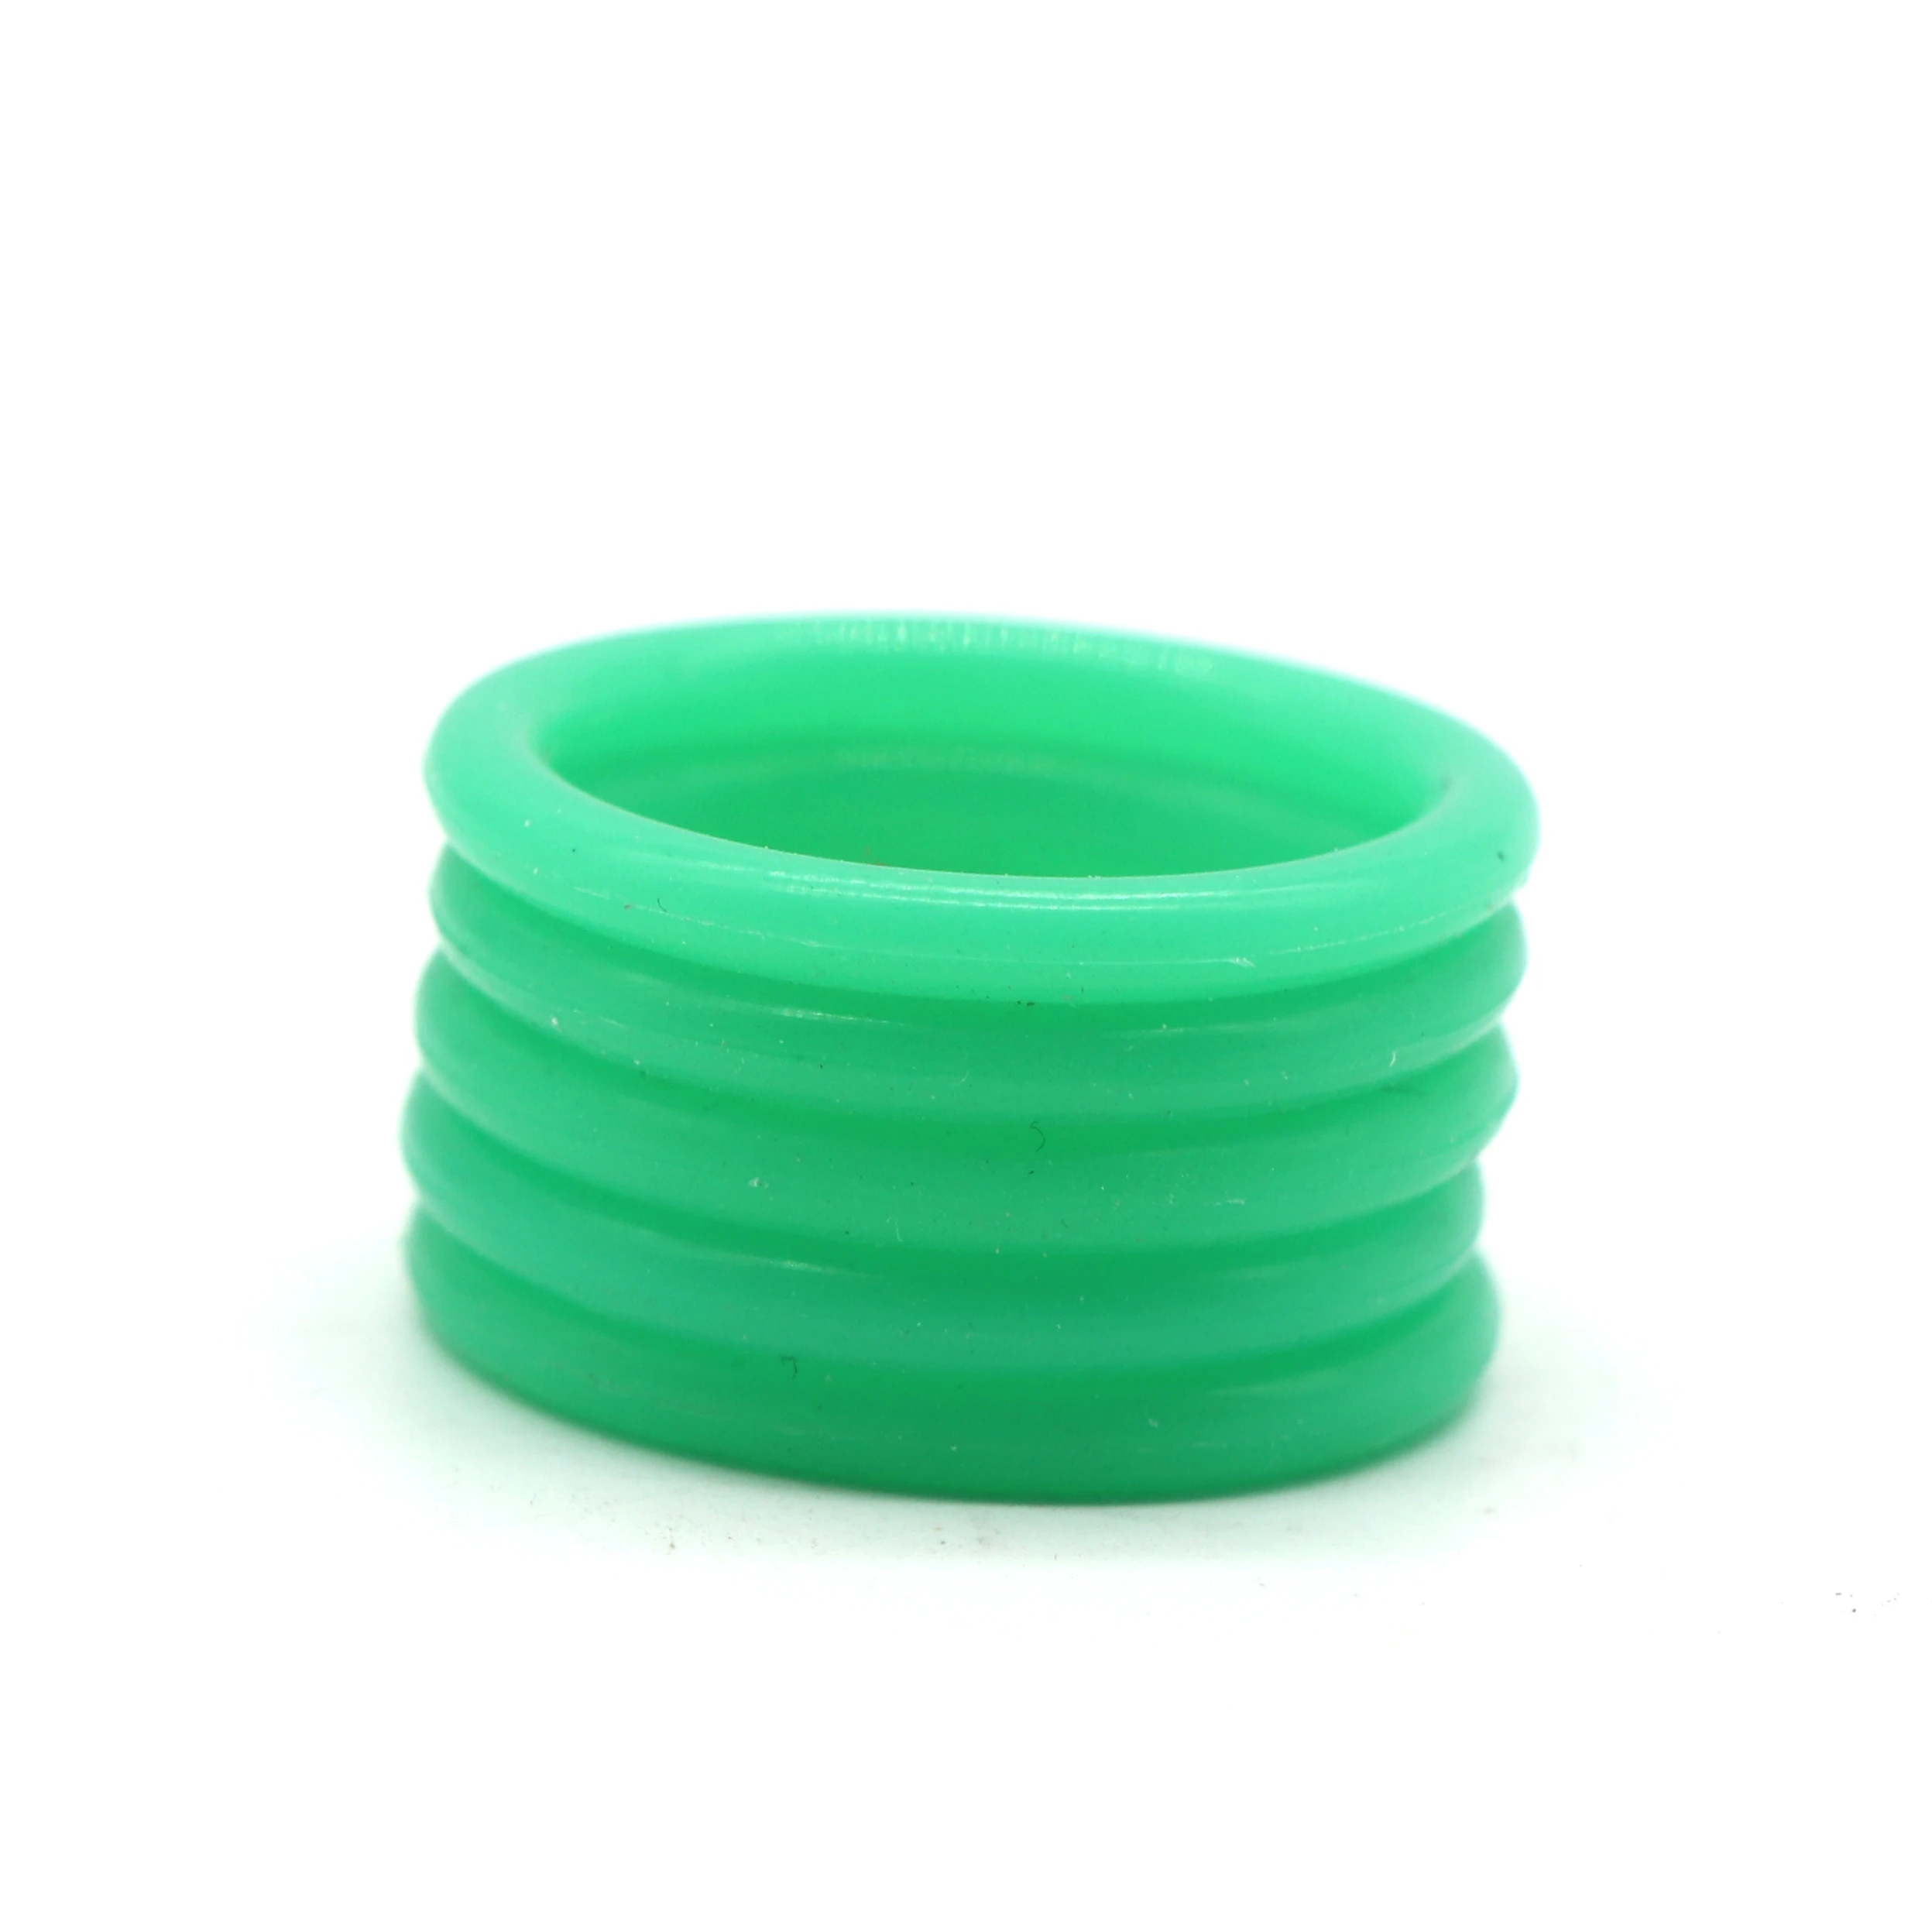 279Pcs Green O-Ring Assortment Kit Washer Gasket Sealing O Rings